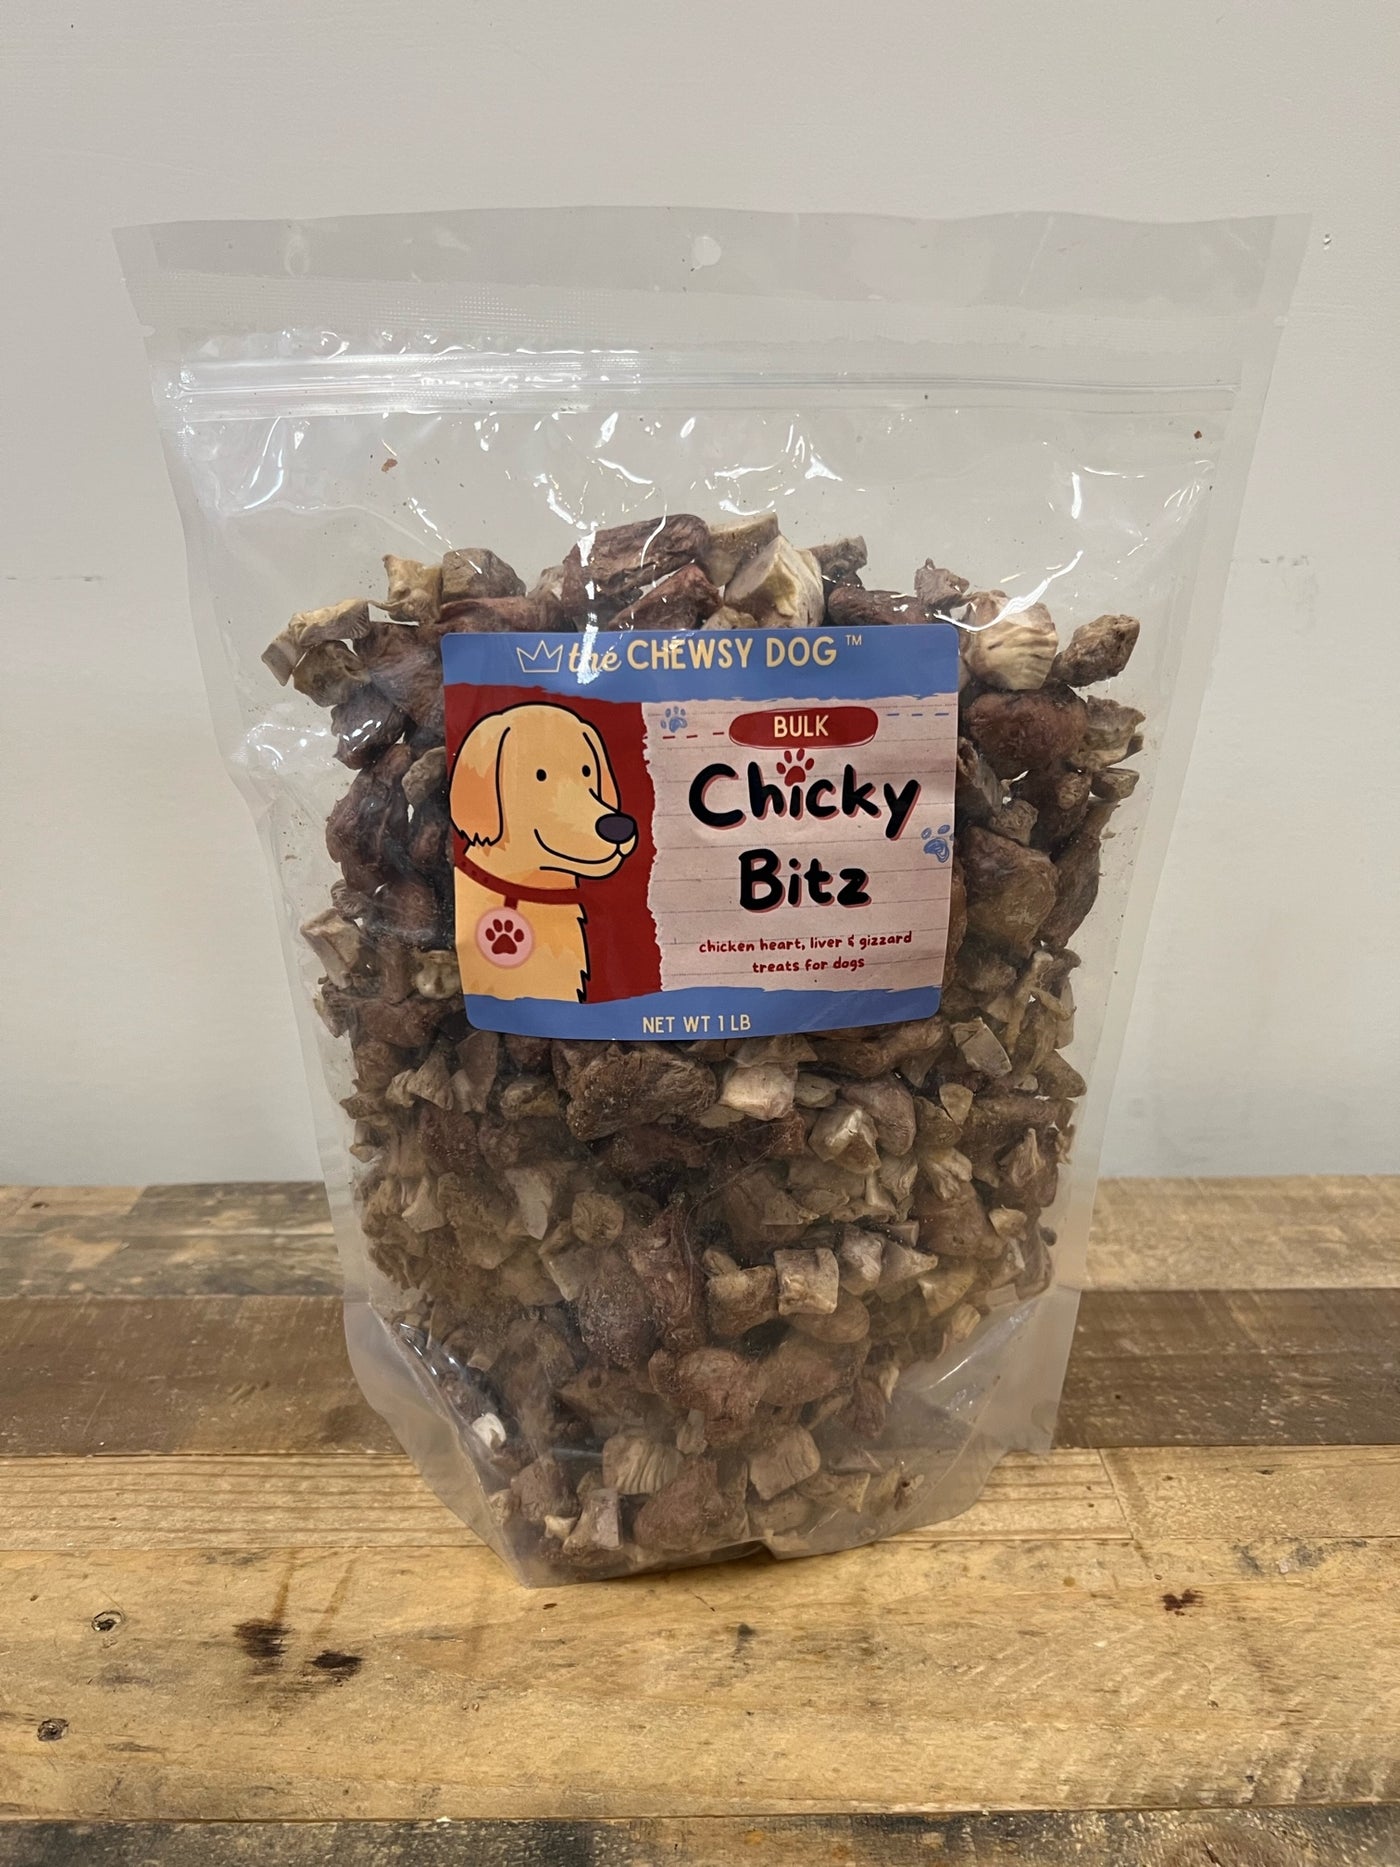 The Chewsy Dog Freeze Dried - Chicky Bitz